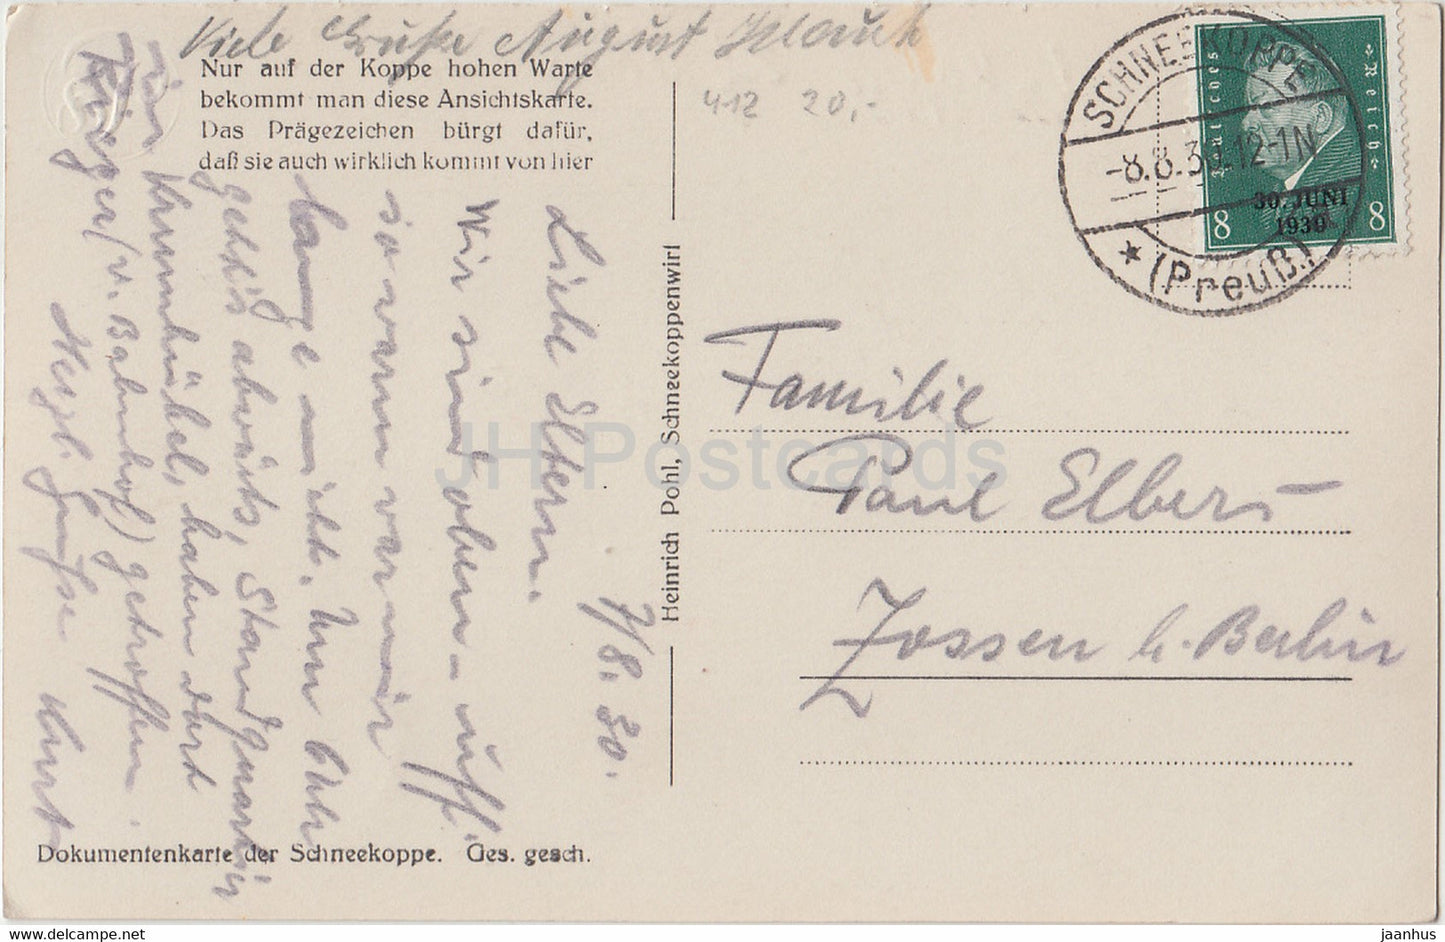 Riesengebirge - Die Schneekoppe - 1605 m  von Osten Gesehen - old postcard - 1930 - Poland - used